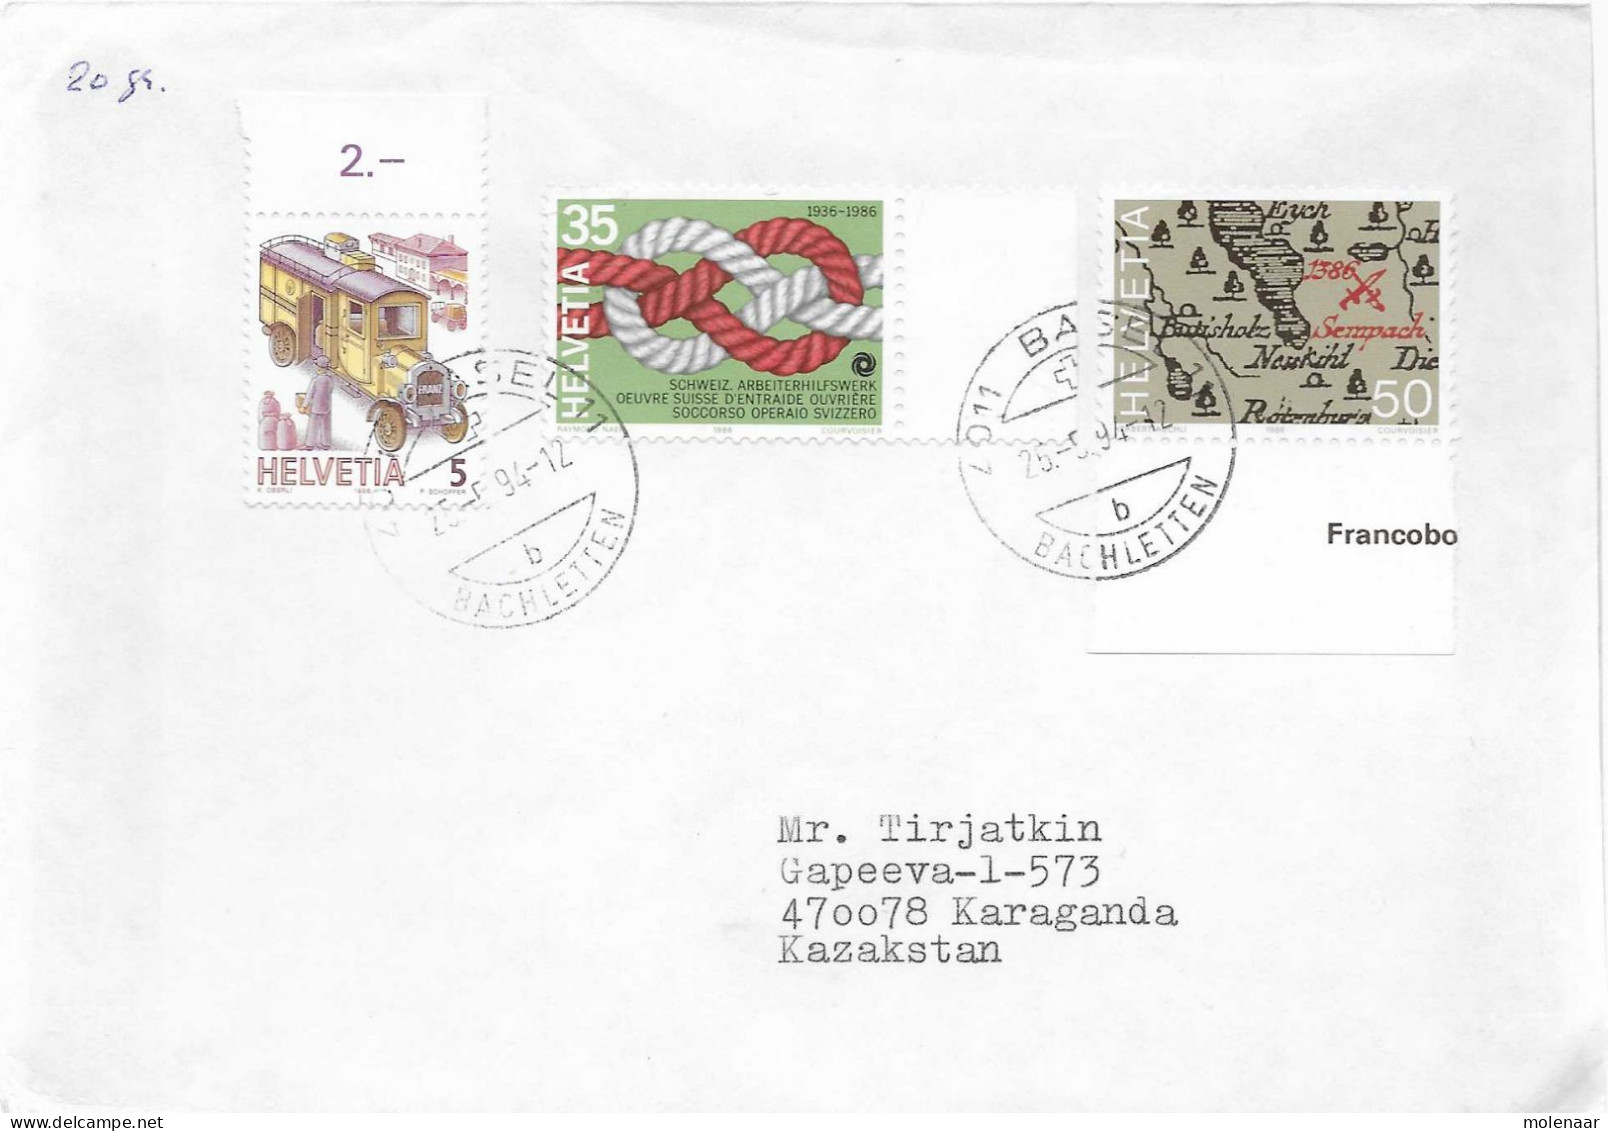 Postzegels > Europa > Zwitserland > 1990-1999 > Brief Uit 1994 Met 3 Postzegels (17648) - Lettres & Documents